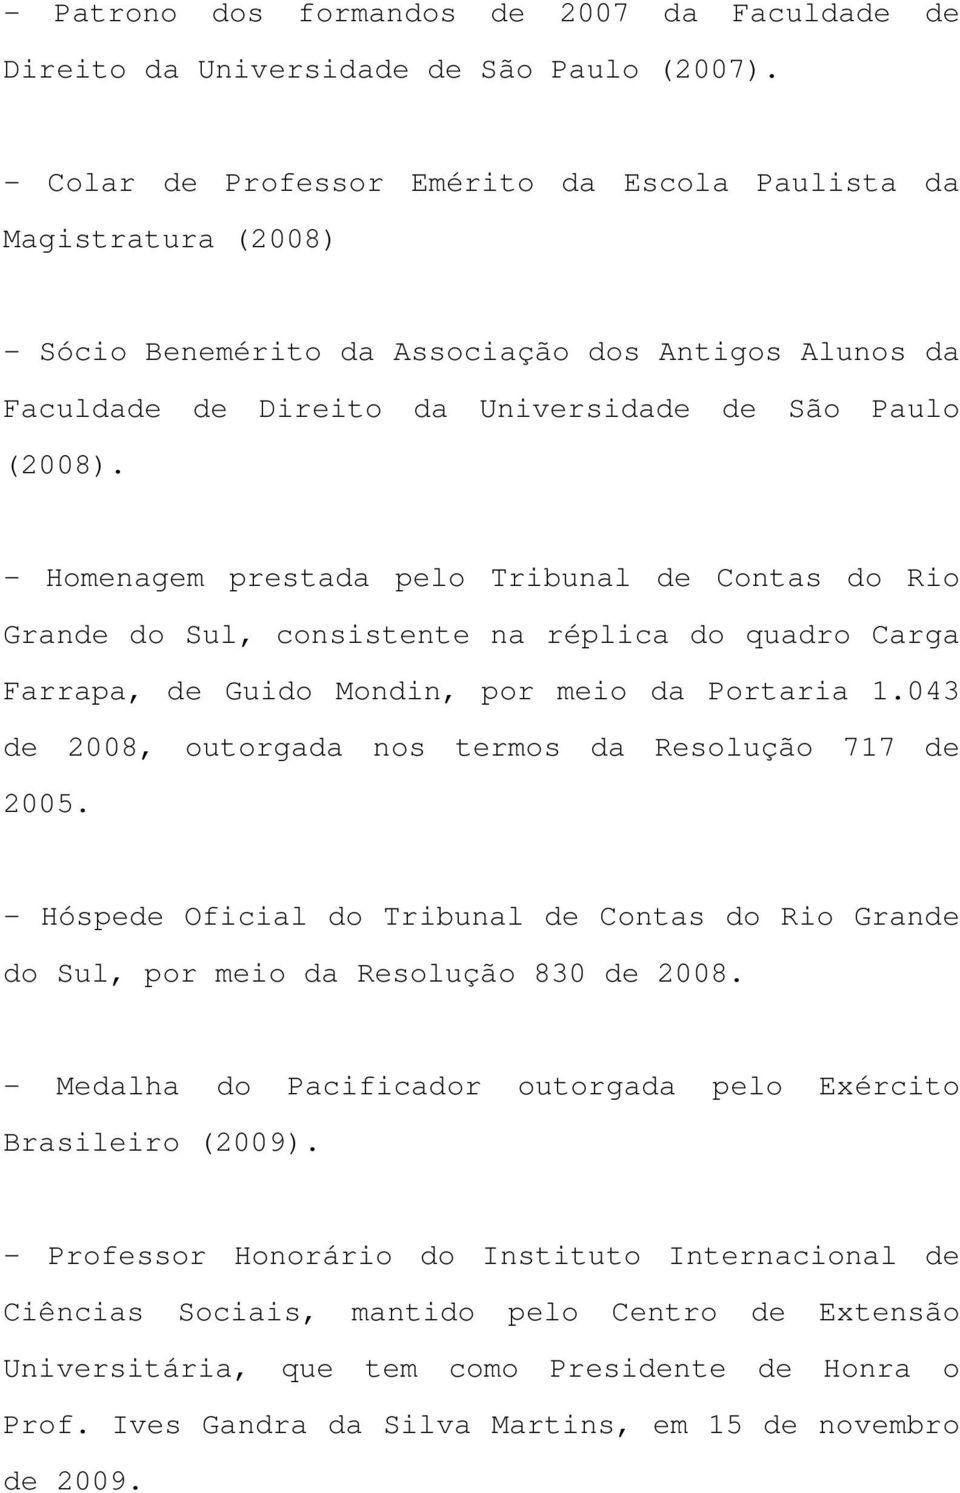 - Homenagem prestada pelo Tribunal de Contas do Rio Grande do Sul, consistente na réplica do quadro Carga Farrapa, de Guido Mondin, por meio da Portaria 1.